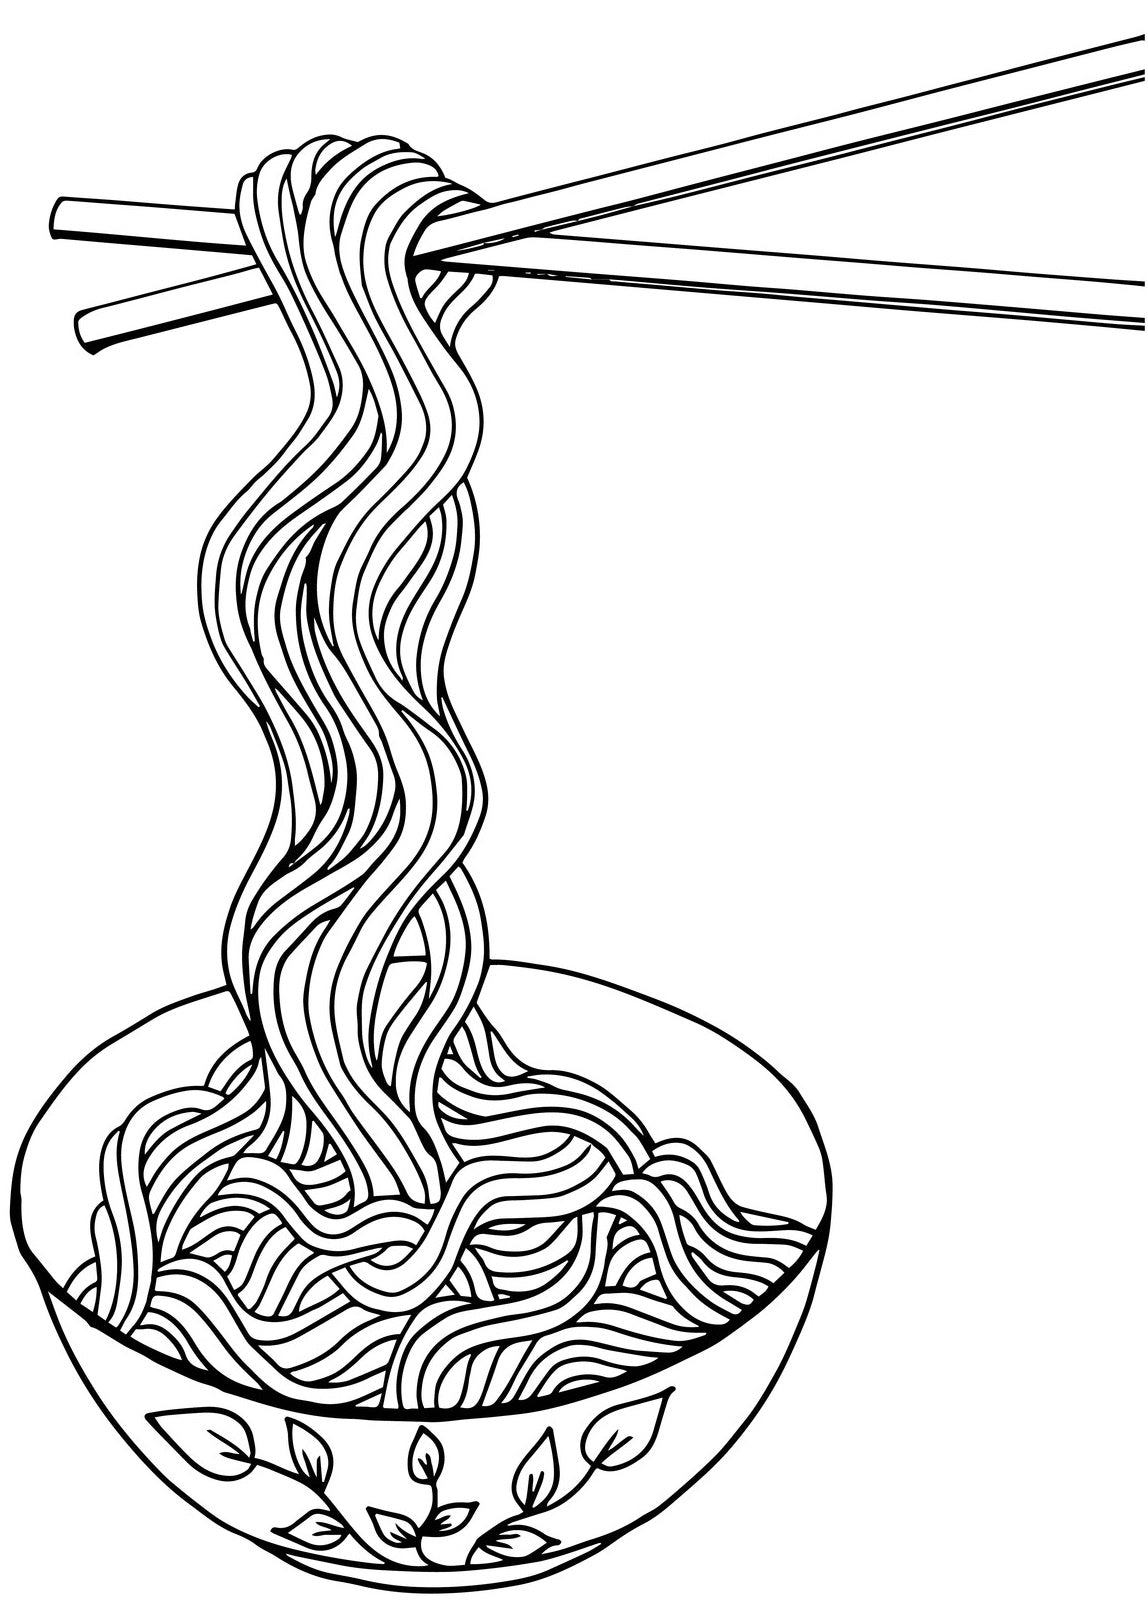 Noodles doodles